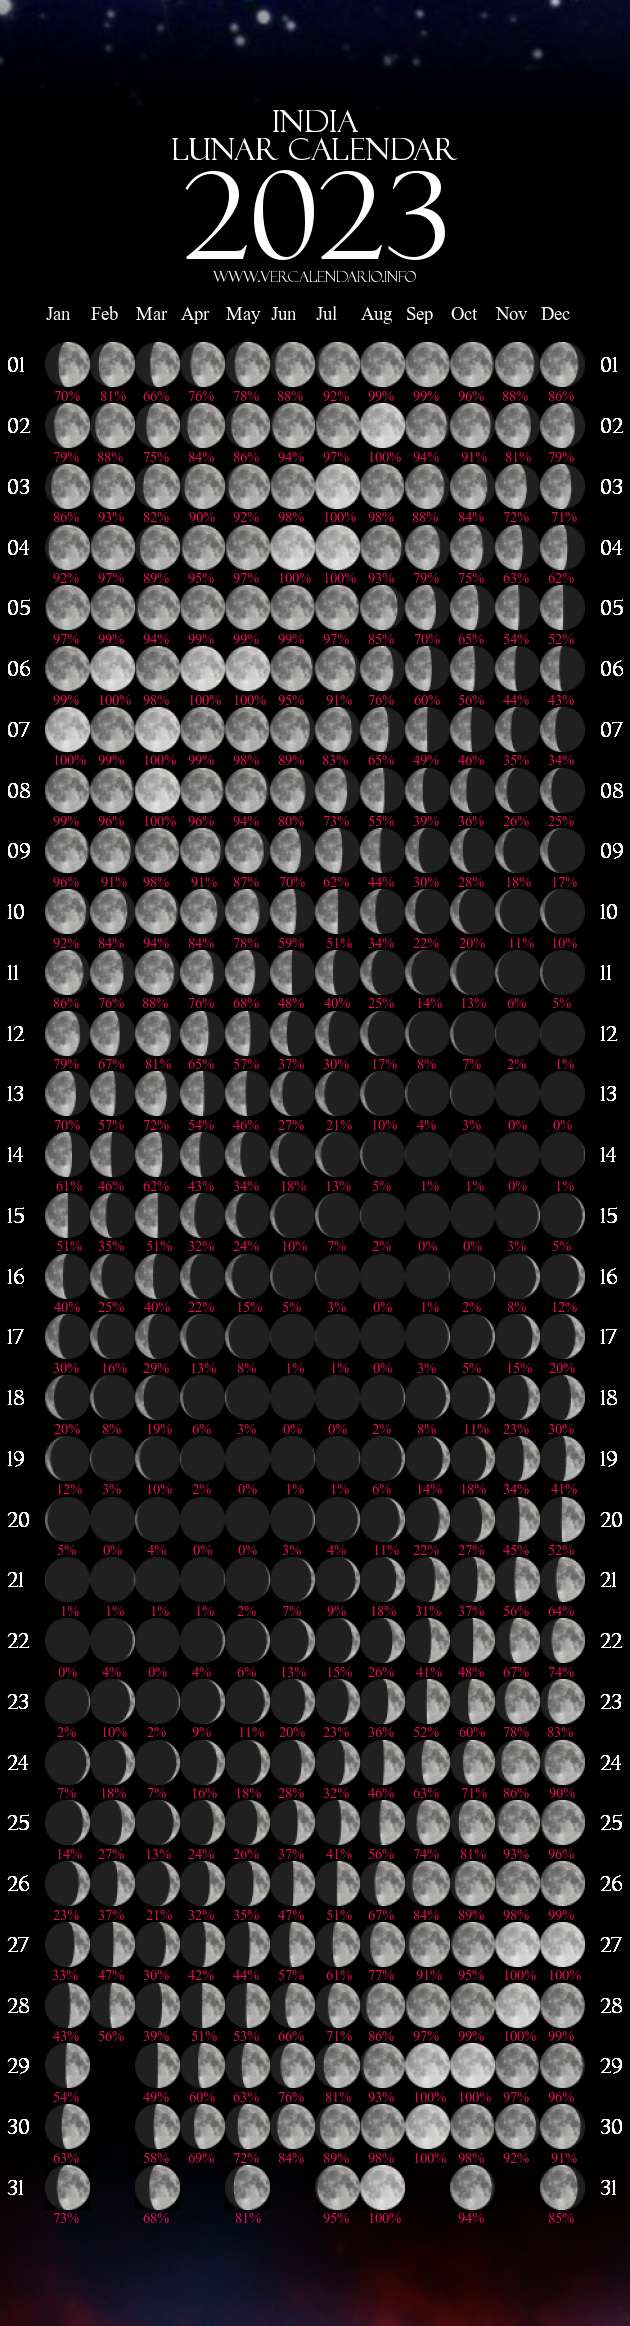 moon-calendar-2023-printable-printable-blank-world